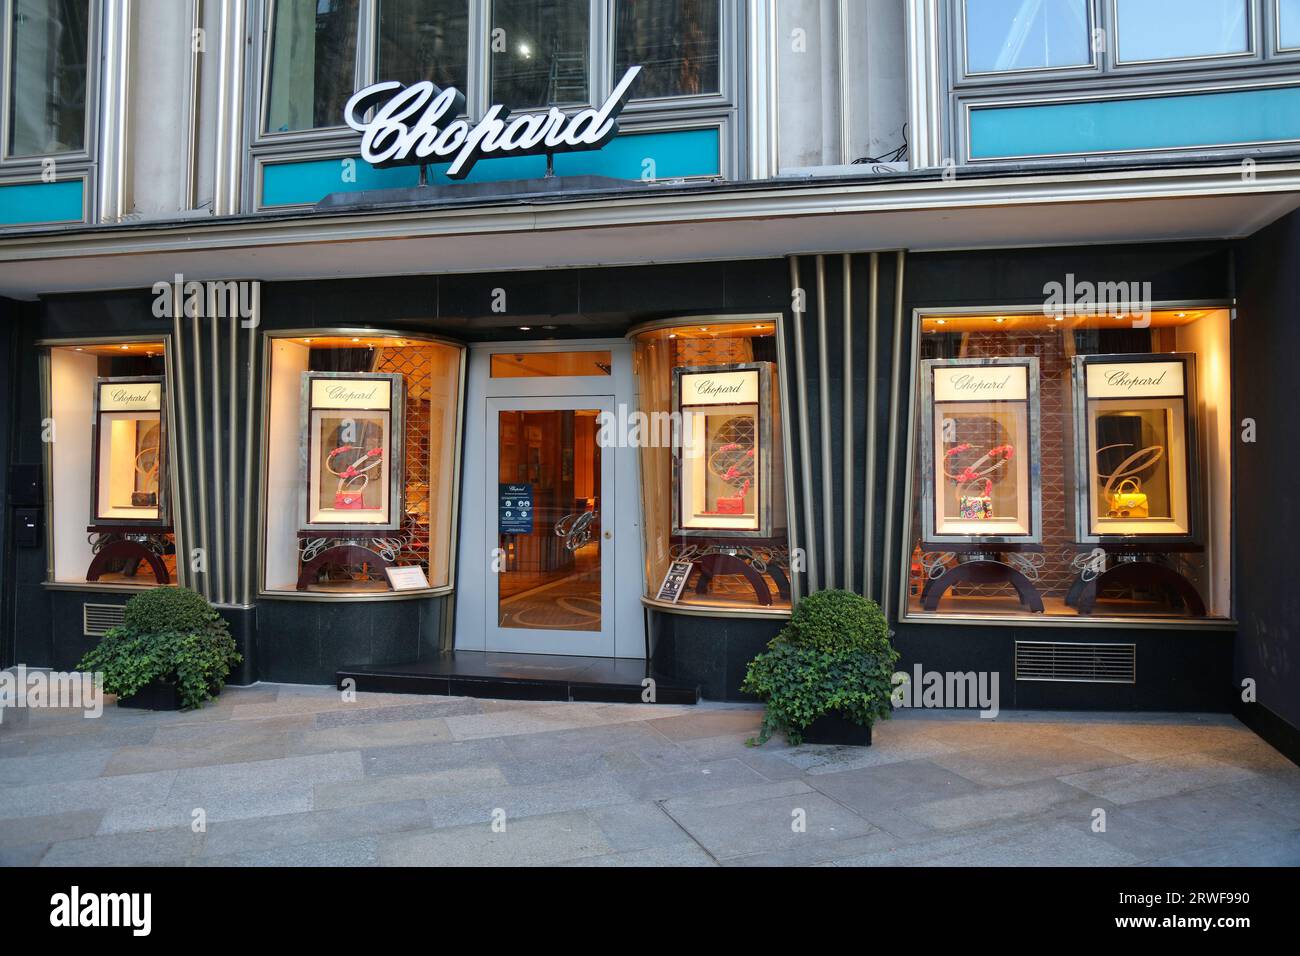 KÖLN, DEUTSCHLAND - 21. SEPTEMBER 2020: Chopard Luxus-Modegeschäft in Köln, Deutschland. Chopard ist eine Schweizer Marke für Uhren, Schmuck und Accessoires Stockfoto